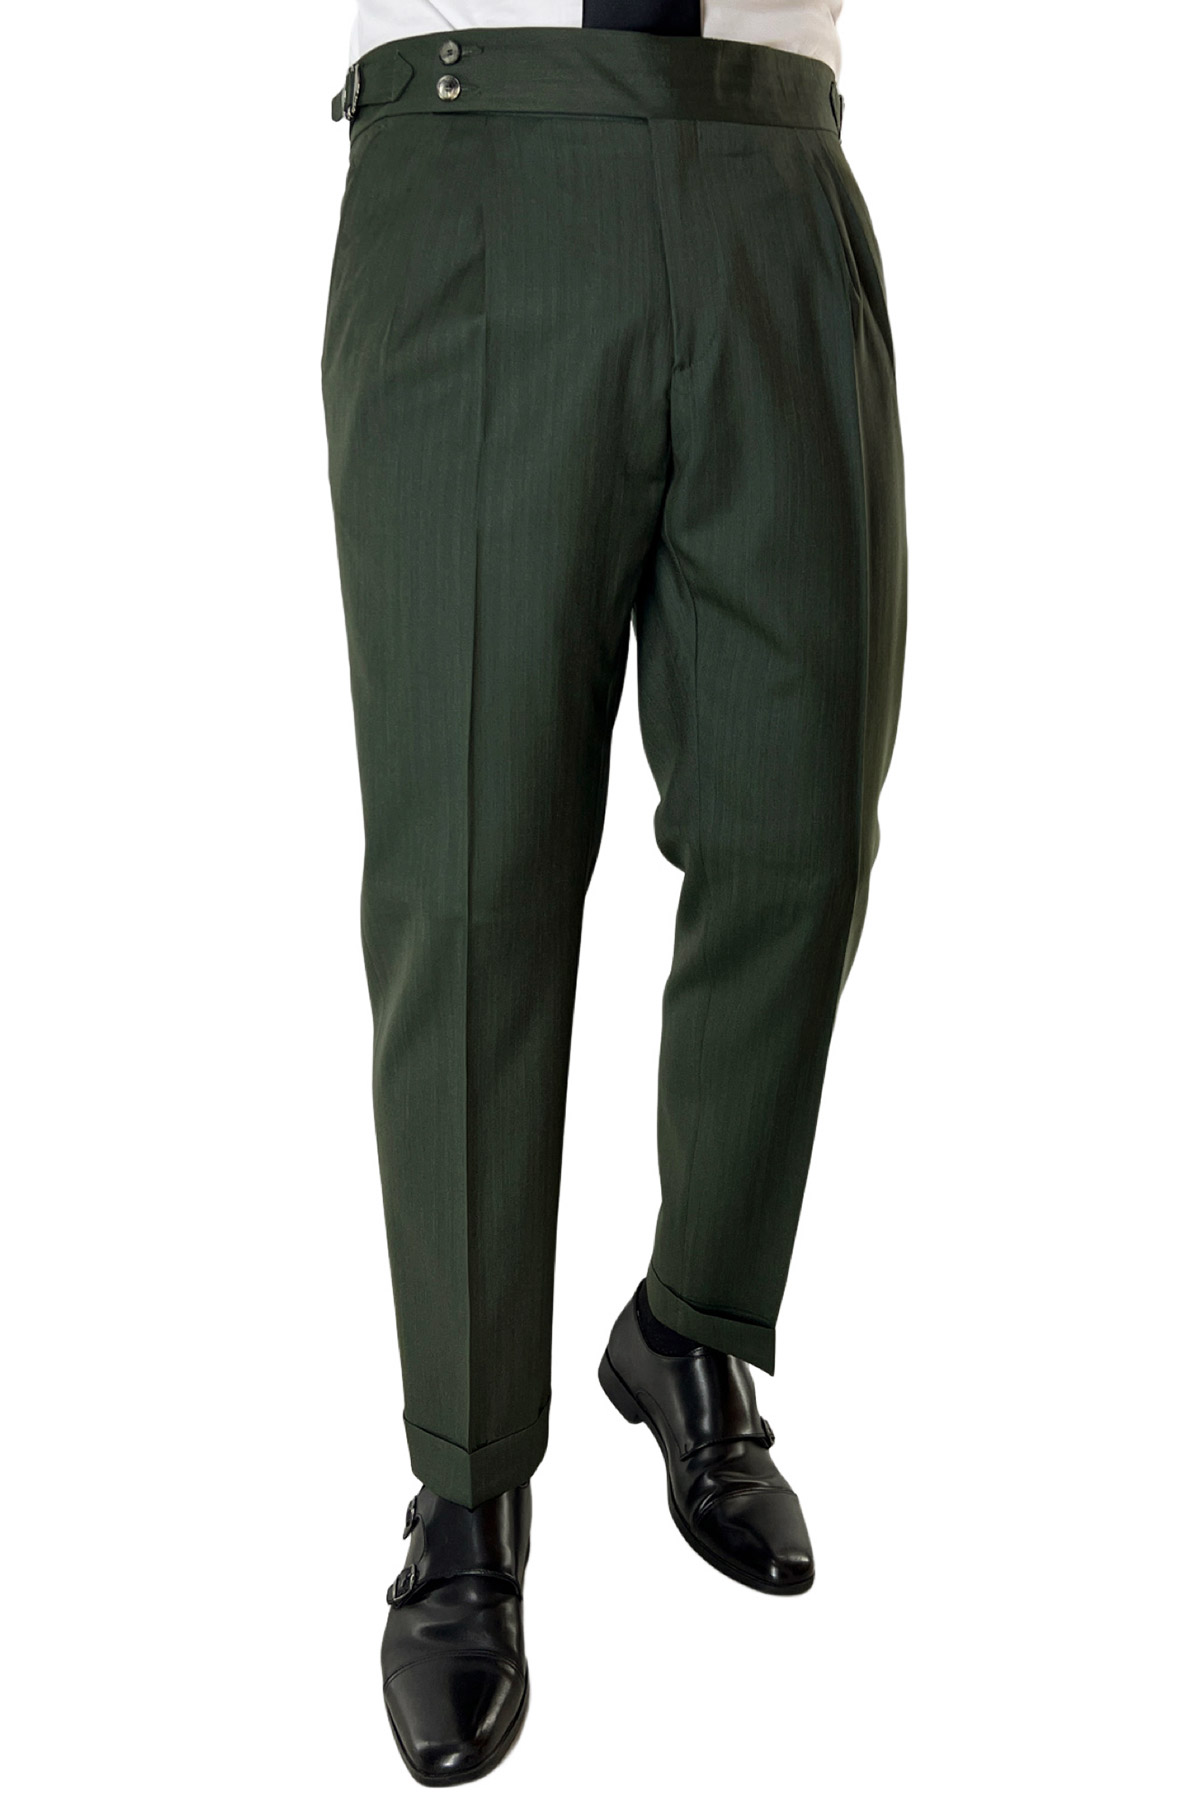 Pantalone uomo verde militare Solaro vita alta doppia pinces in fresco lana e seta Vitale Barberis Canonico